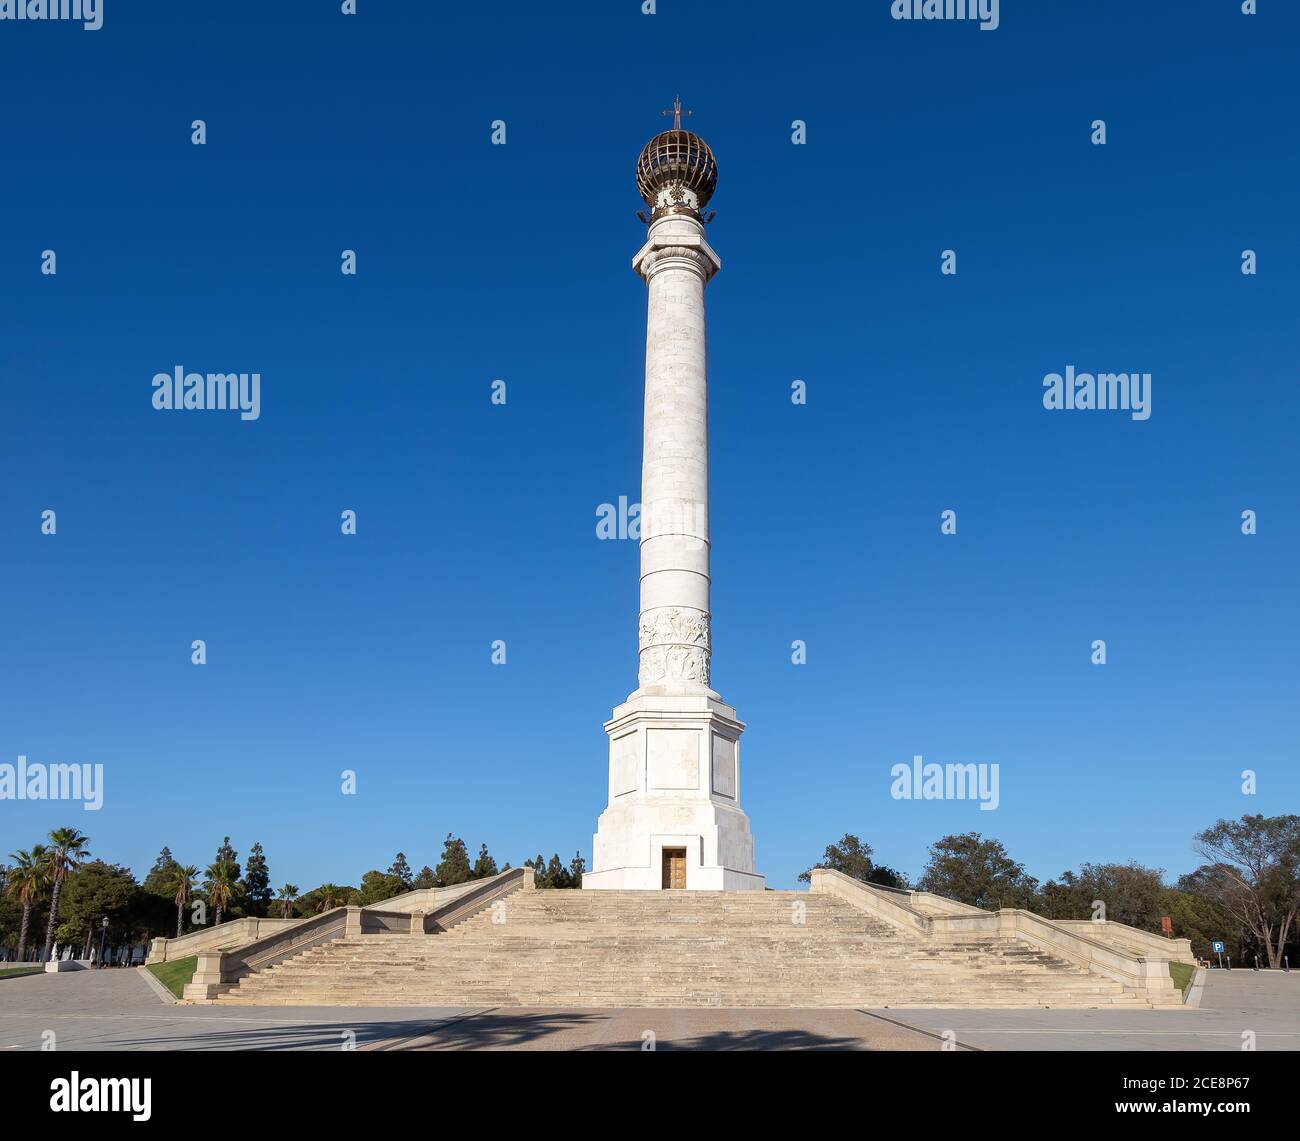 El Monumento a los descubridores, también conocido como Columna del IV Centenario, es un ejemplar de arte público en la ciudad española de Palos de la Frontera, ded Foto de stock